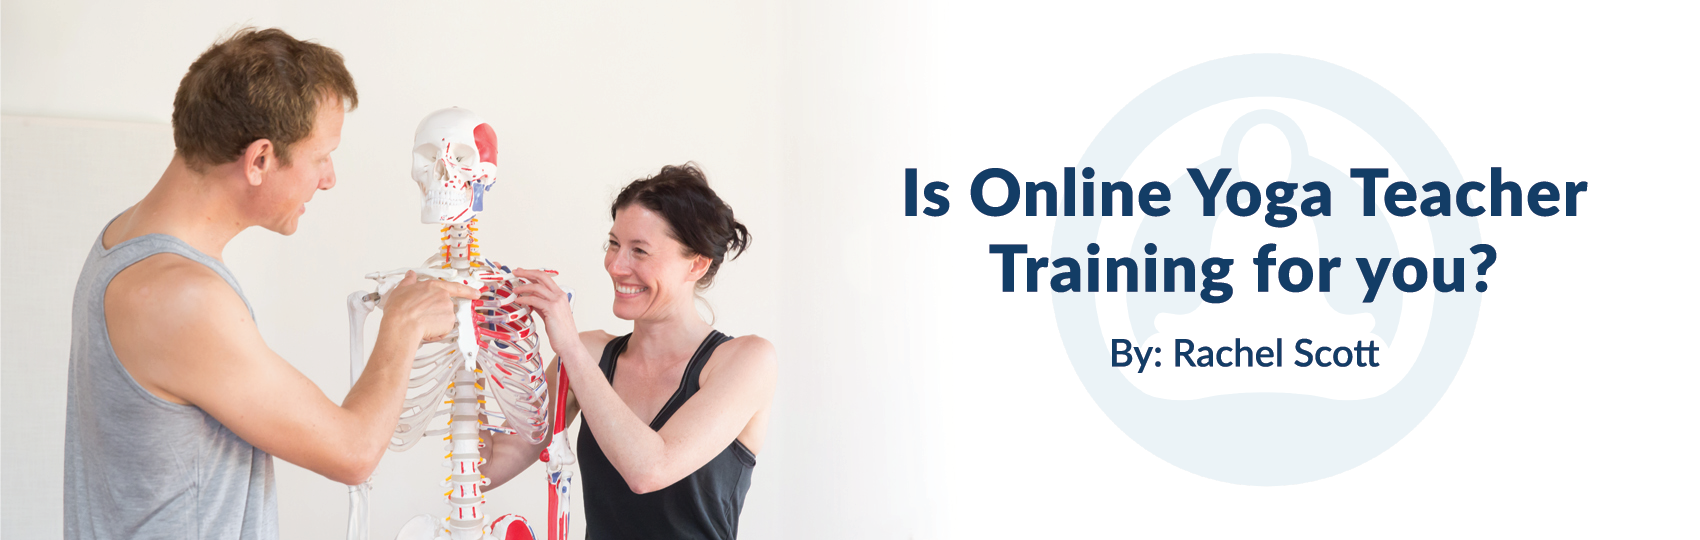 Is Online Yoga Teacher Training For You Blog Banner